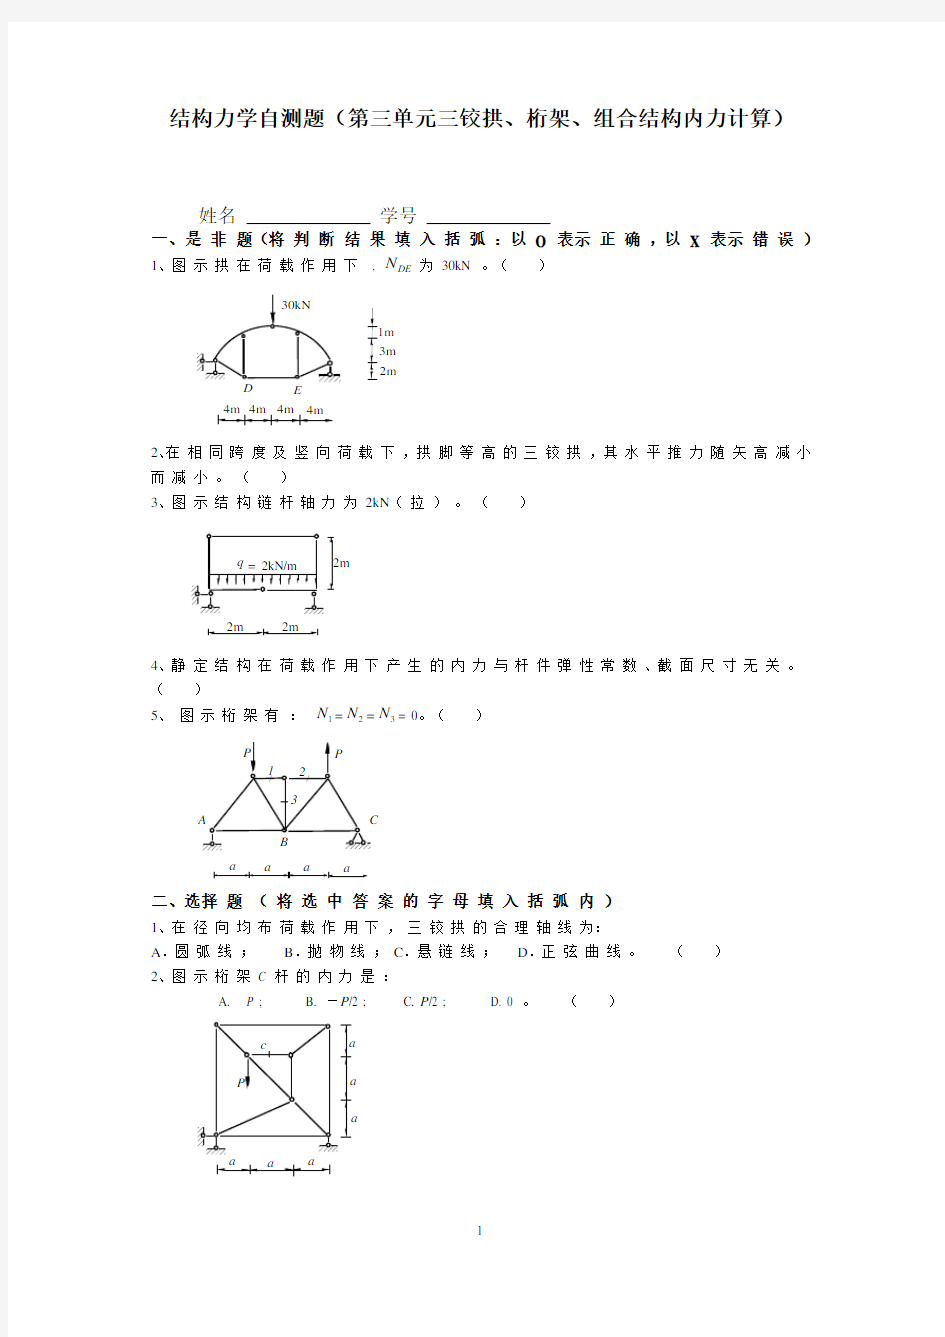 同济大学结构力学自测题(第三单元三铰拱、桁架、组合结构内力计算)附答案